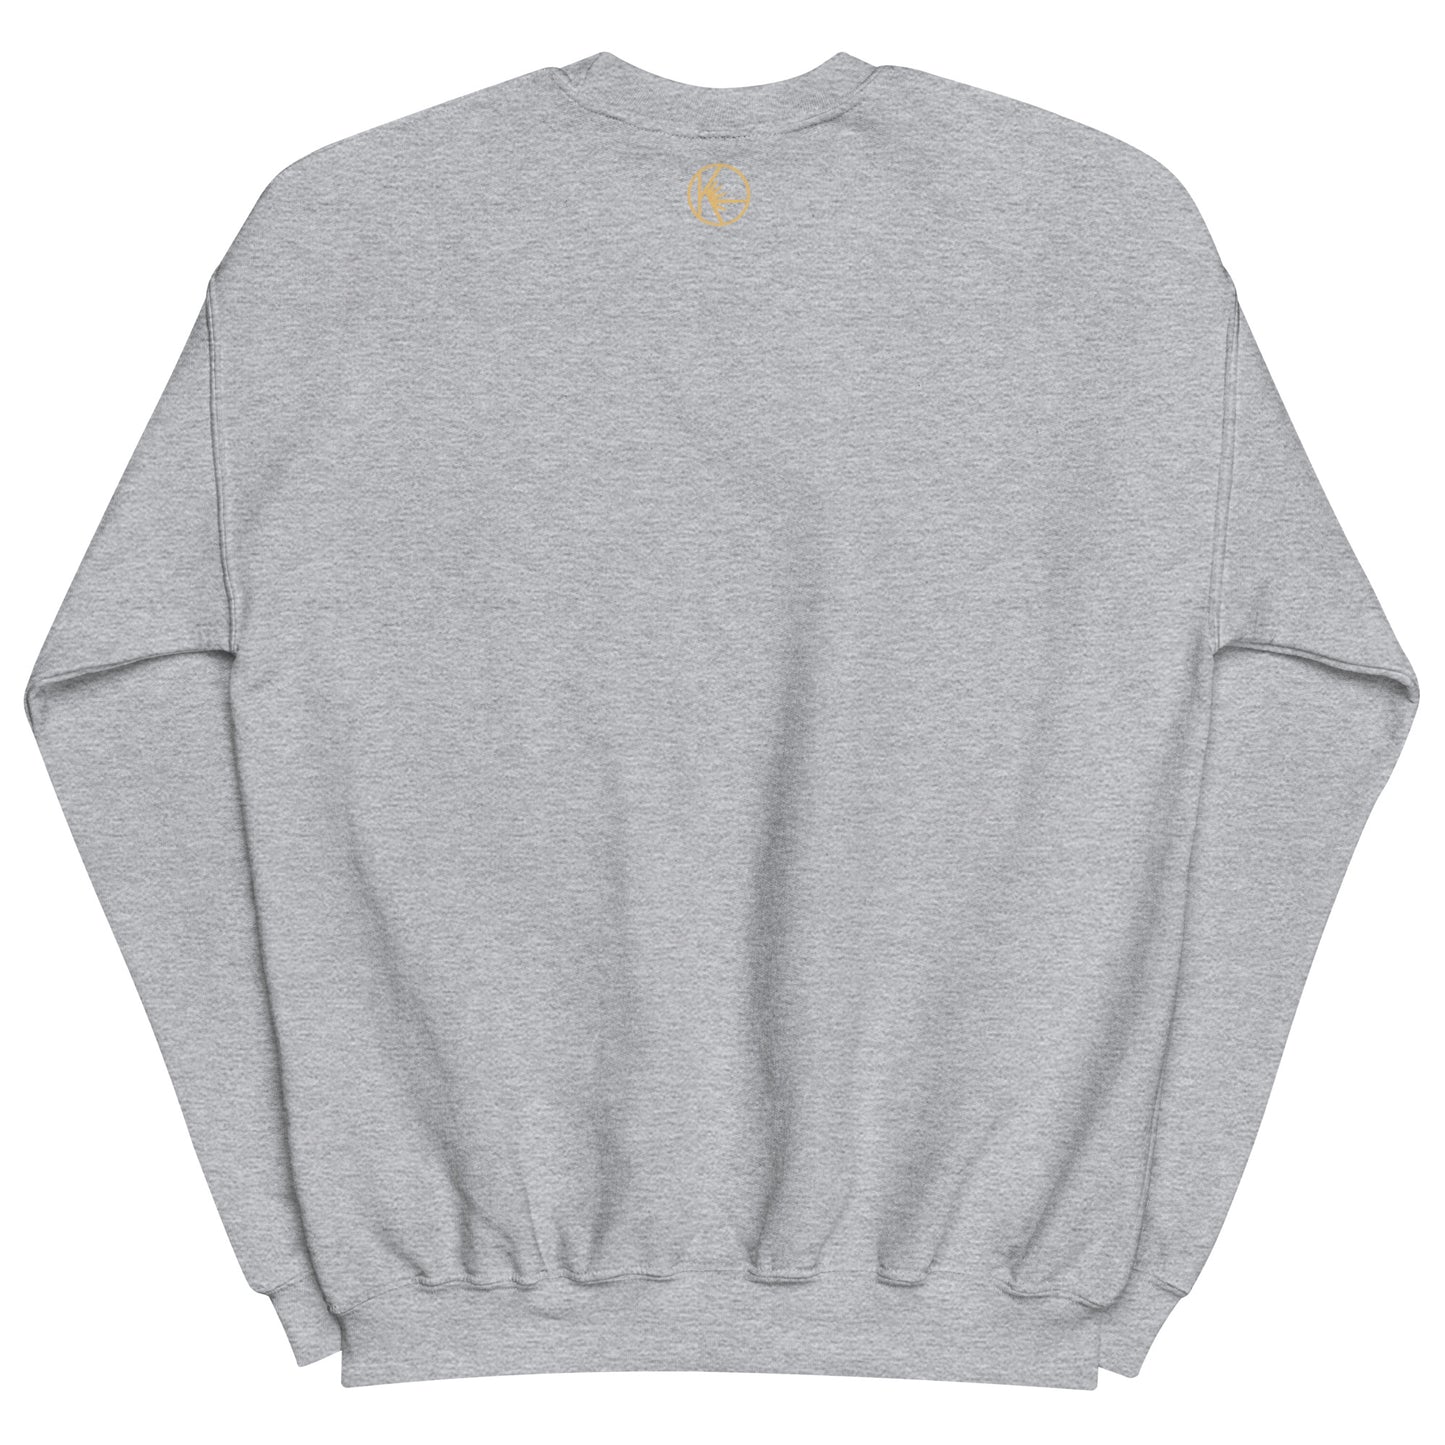 Sweatshirt - It’s Not A Trend